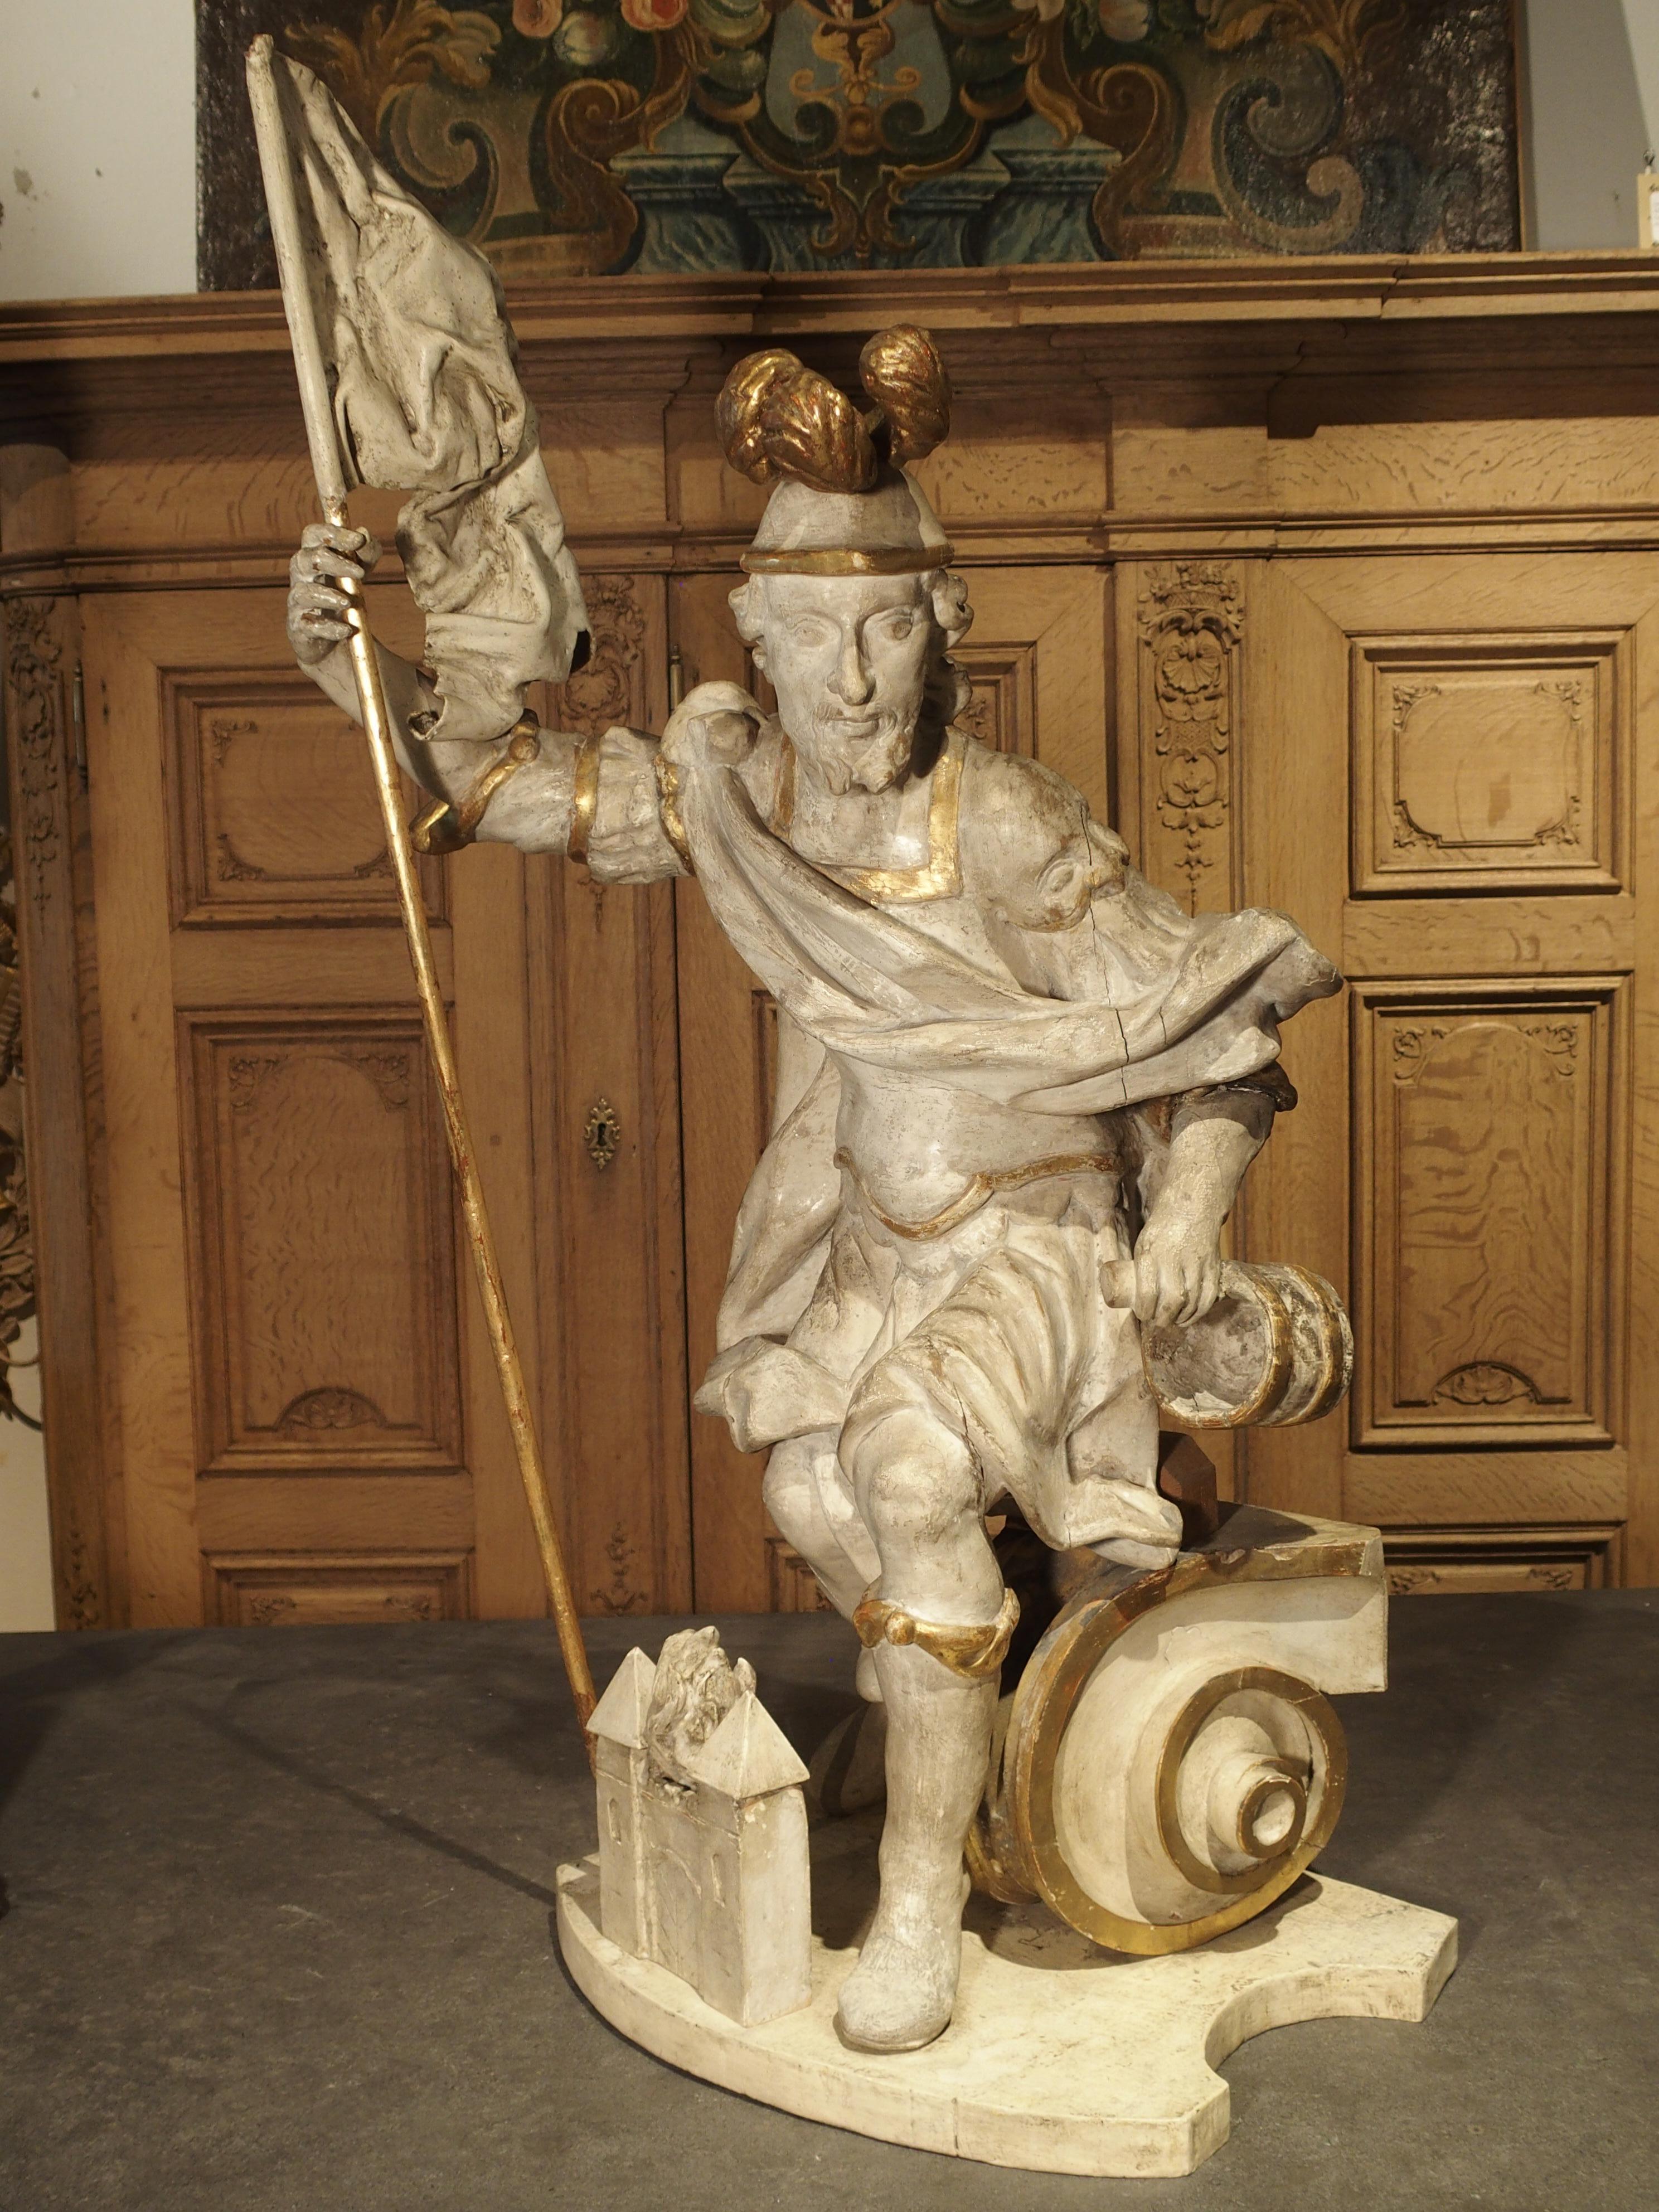 Saint Florian (250 après J.-C. - 304 après J.-C.) était le saint patron des pompiers, des brasseurs, des ramoneurs et de la ville de Linz, en Autriche. Il a servi dans l'armée romaine et une partie de ses fonctions consistait à organiser des